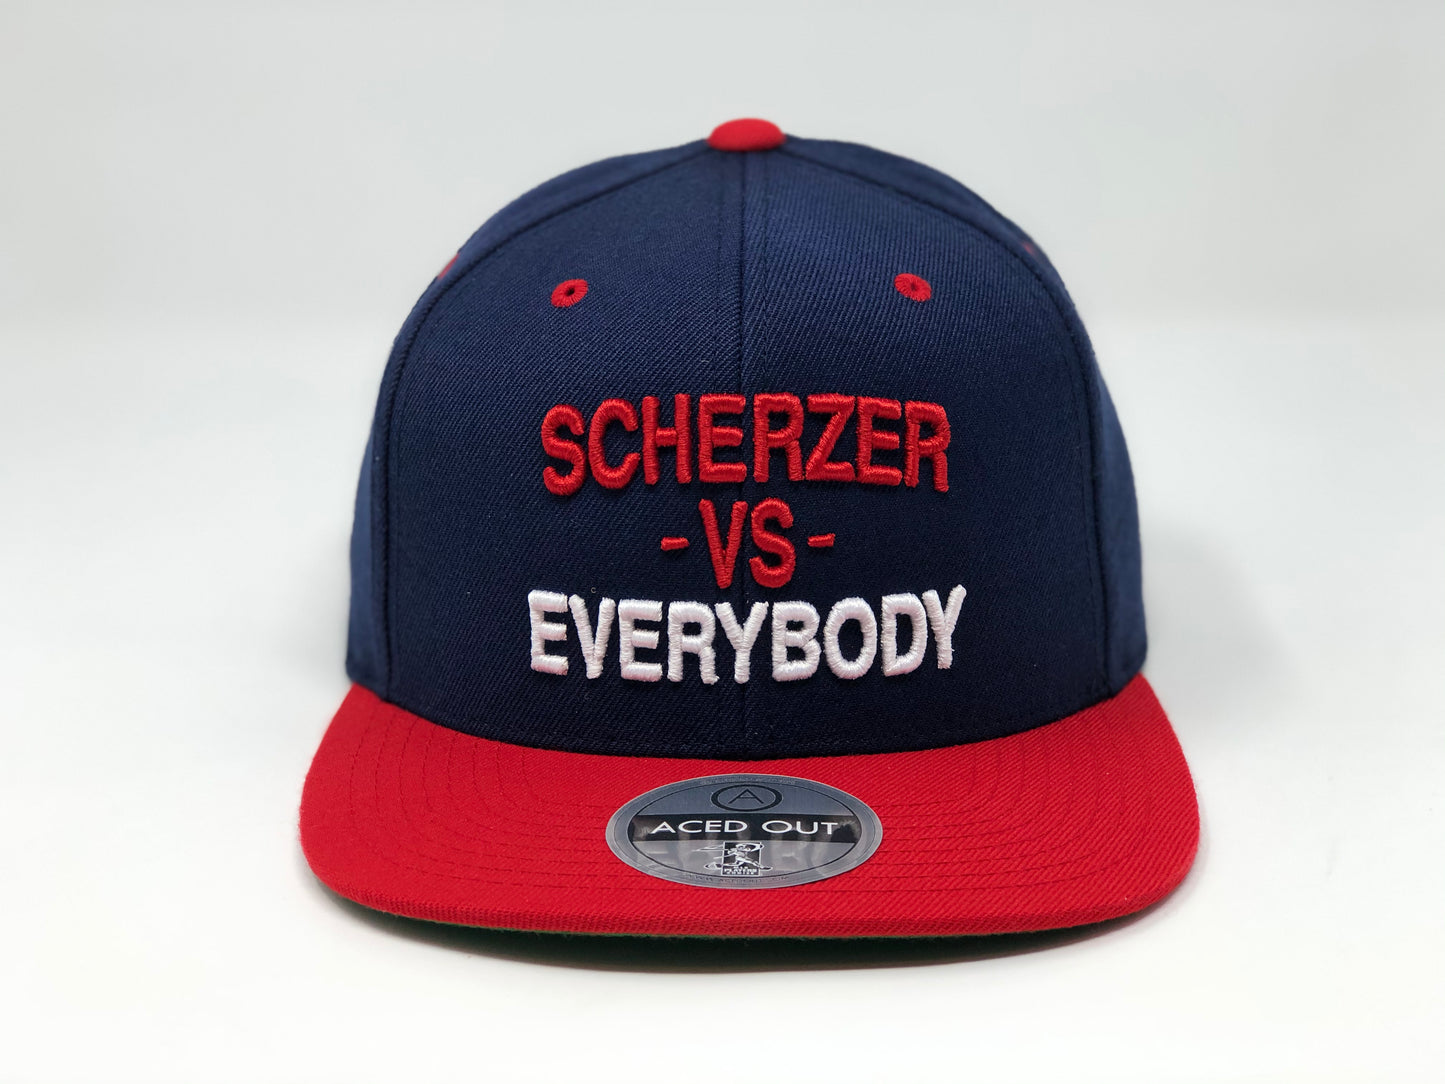 Max Scherzer vs EVERYBODY Hat - Navy/Red Snapback